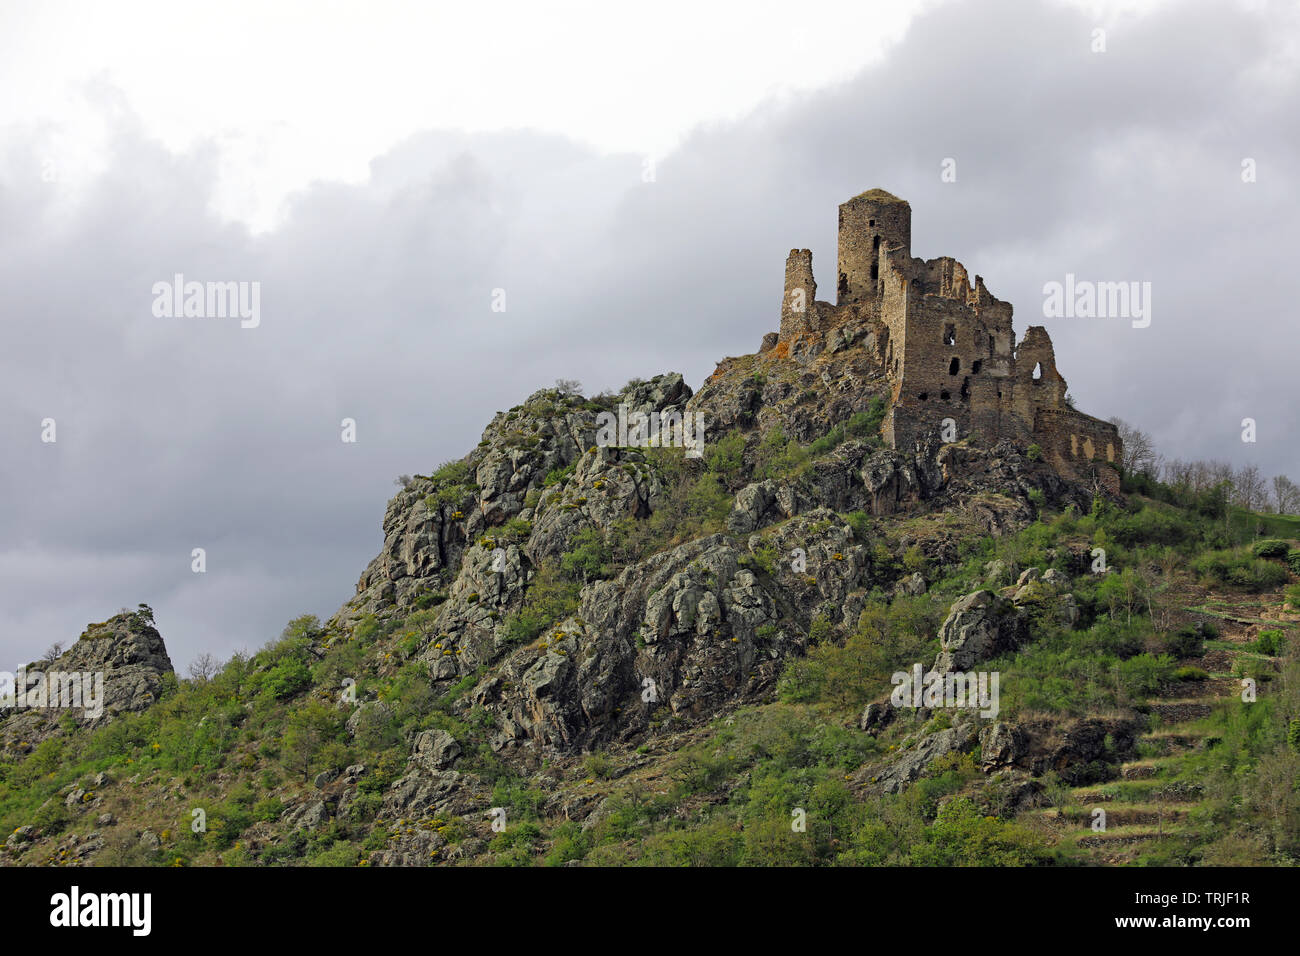 Ruins of medieval castle named “Chateau de leotoing”. Puy-de-dome, Auvergne, France Stock Photo